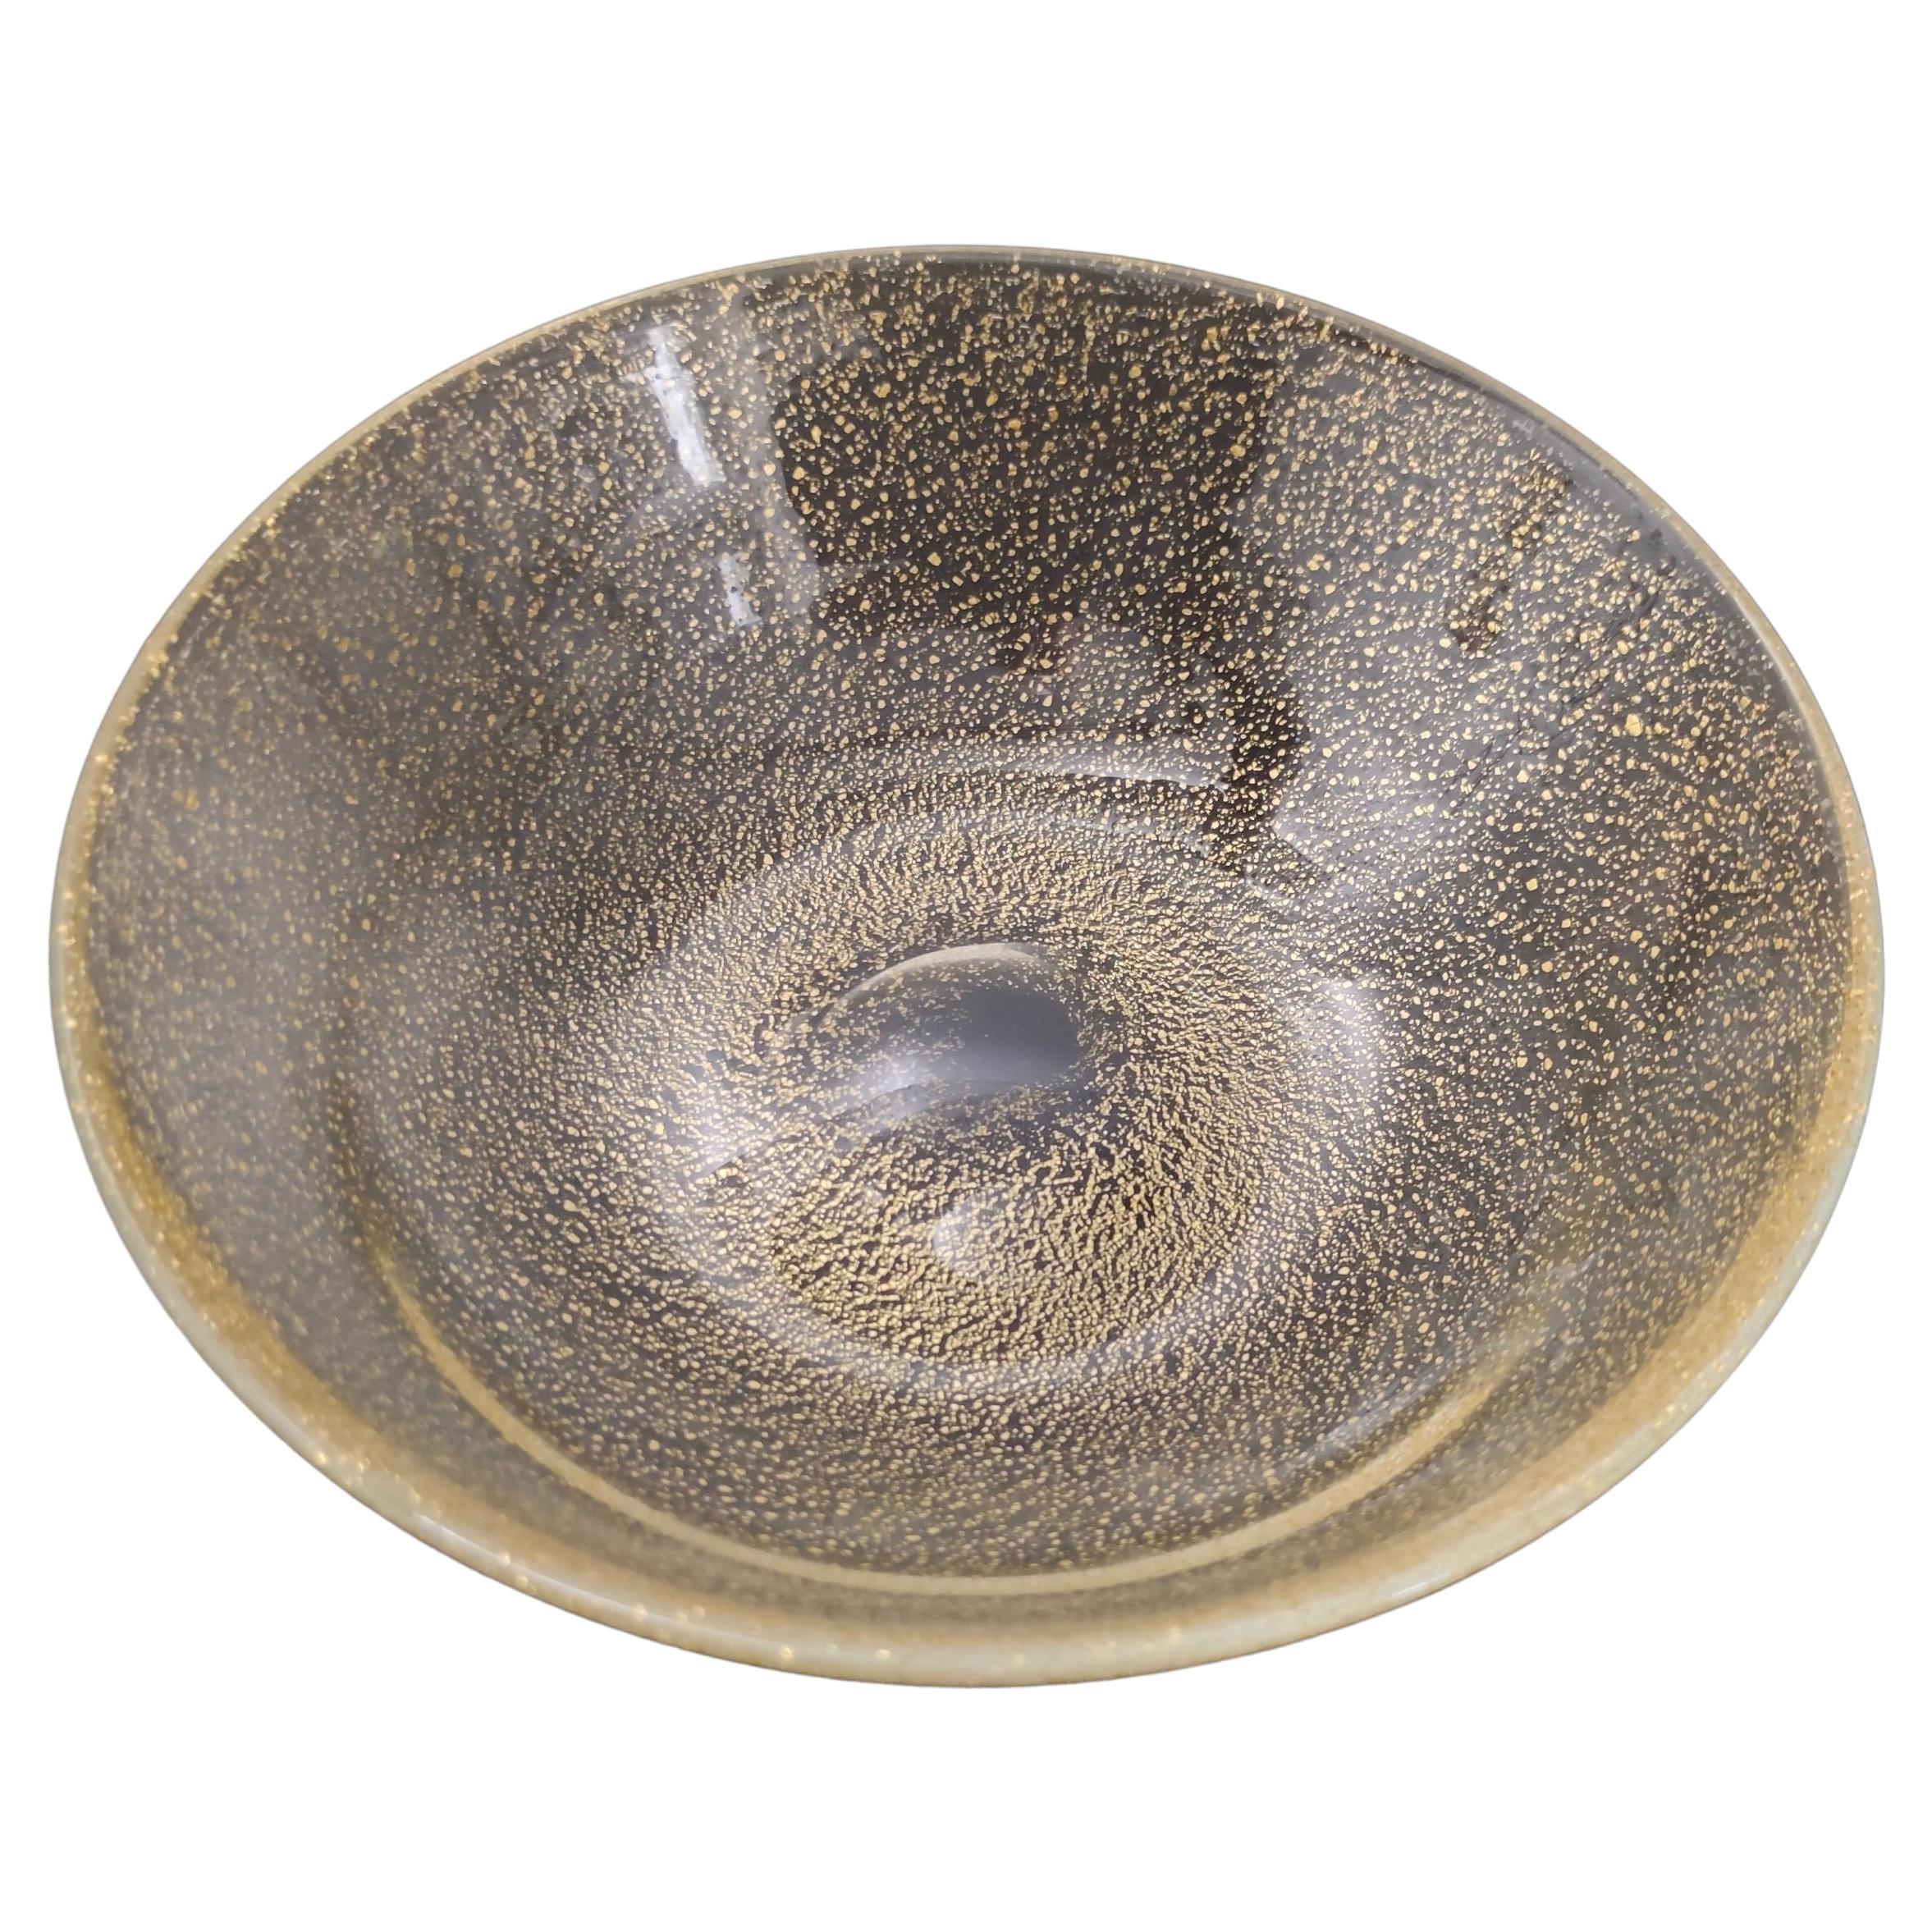 Fabriqué en Italie, années 1970.
Ce bol ou vide-poche est réalisé en verre de Murano et présente des inclusions de mouchetures d'or. 
Il peut présenter de légères traces d'utilisation puisqu'il est vintage, mais il peut être considéré comme en